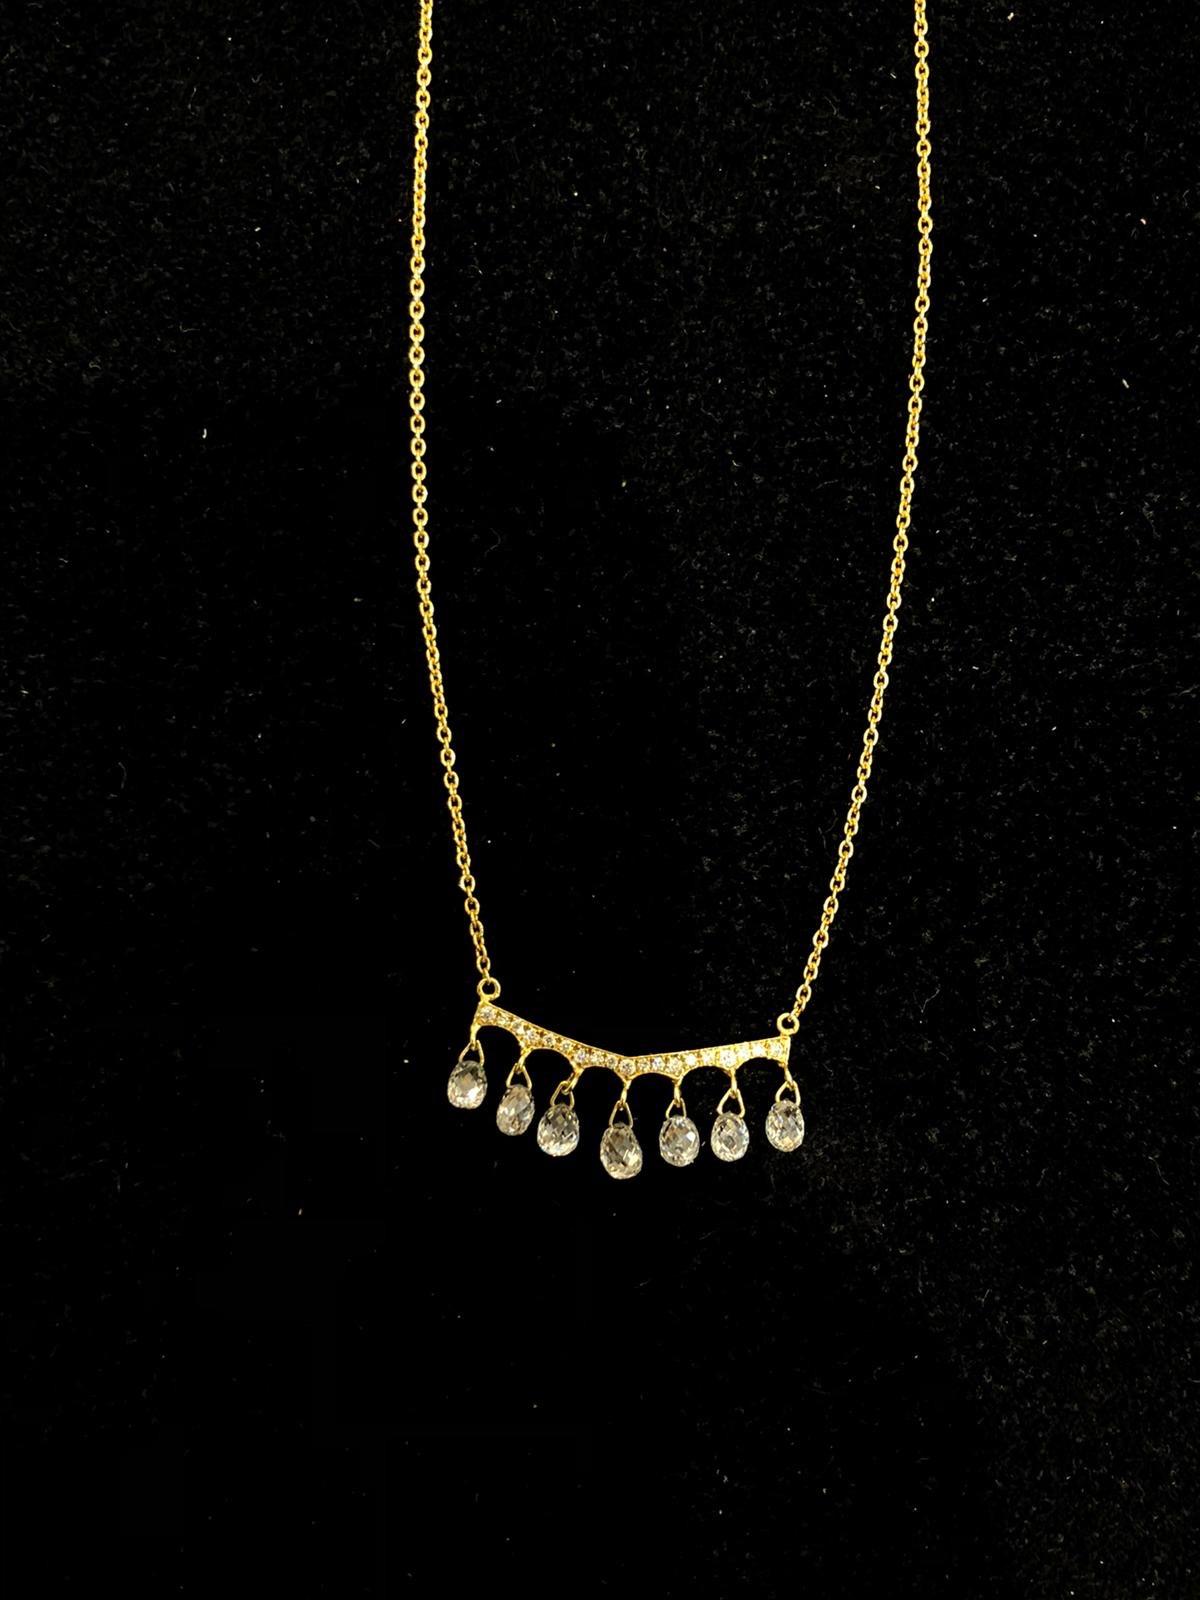 Briolette Cut PANIM Yellow Gold Briolette Diamond Pendant Necklace For Sale